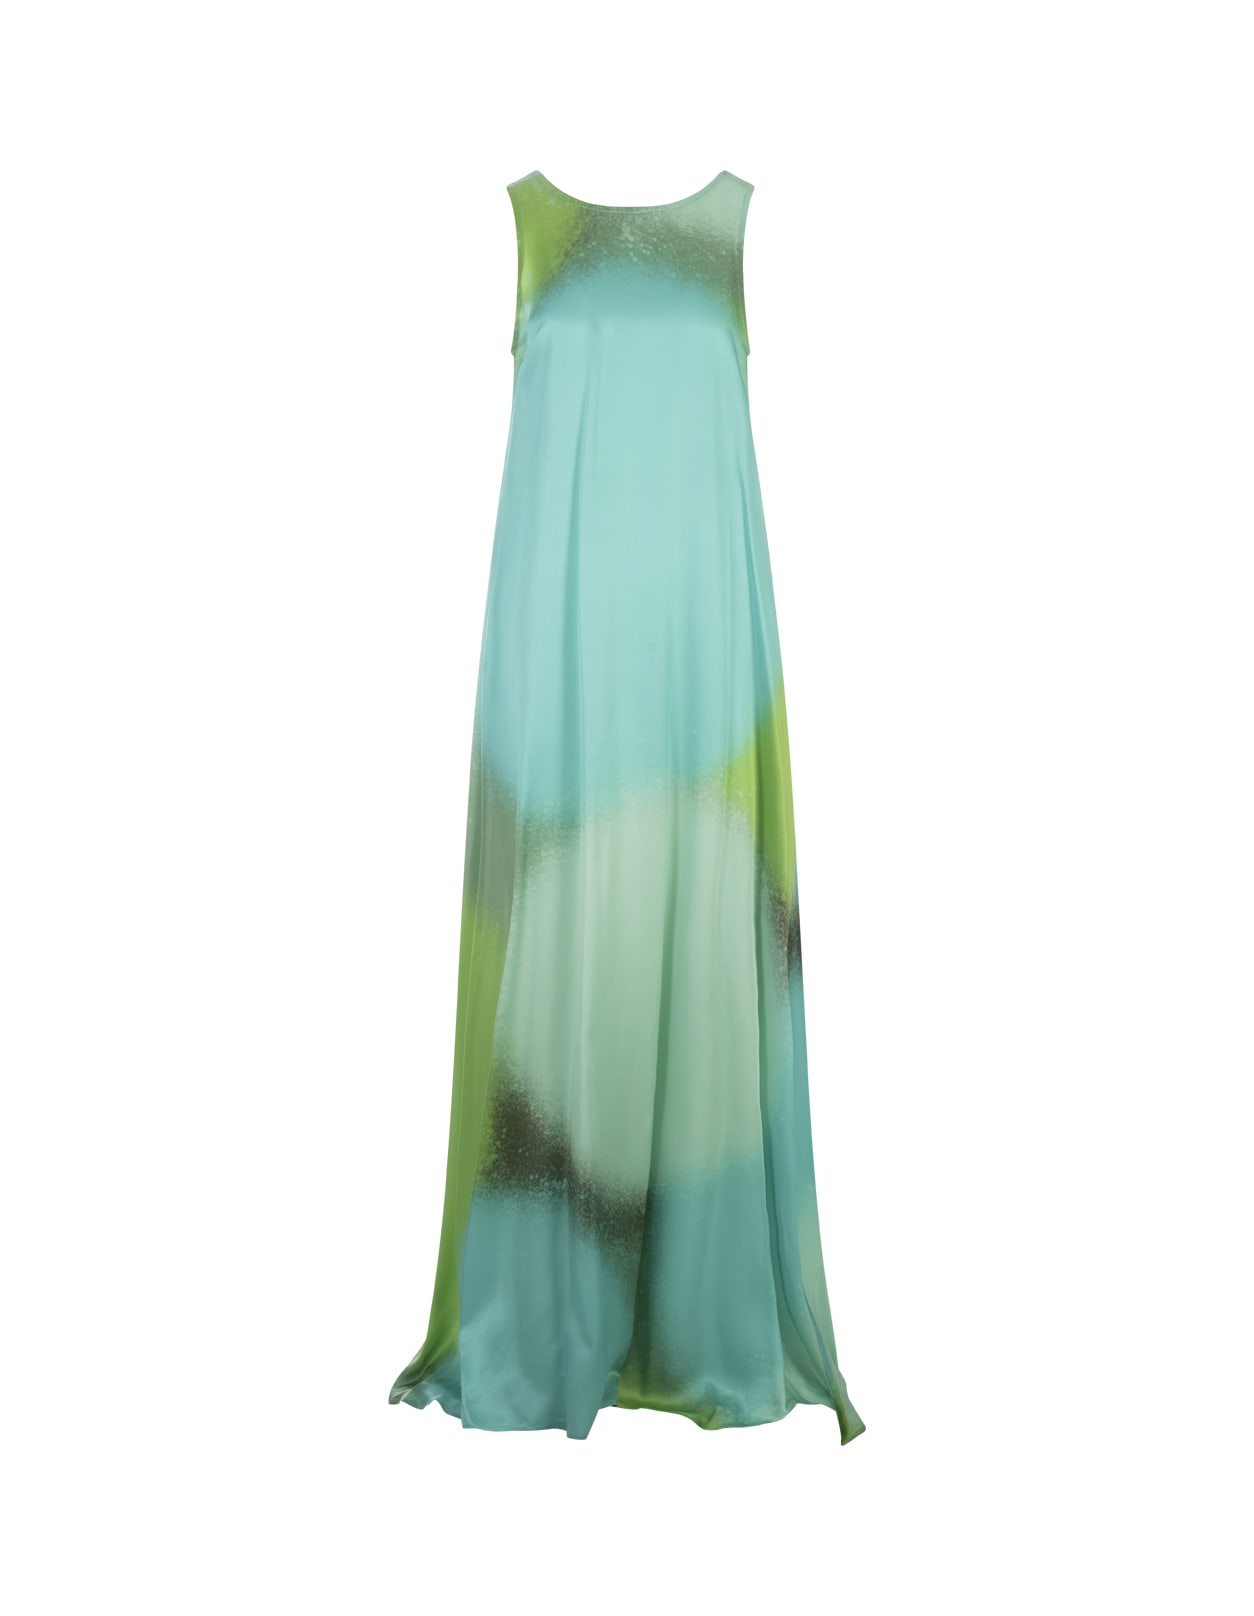 Shaded Green Long Sleeveless Dress